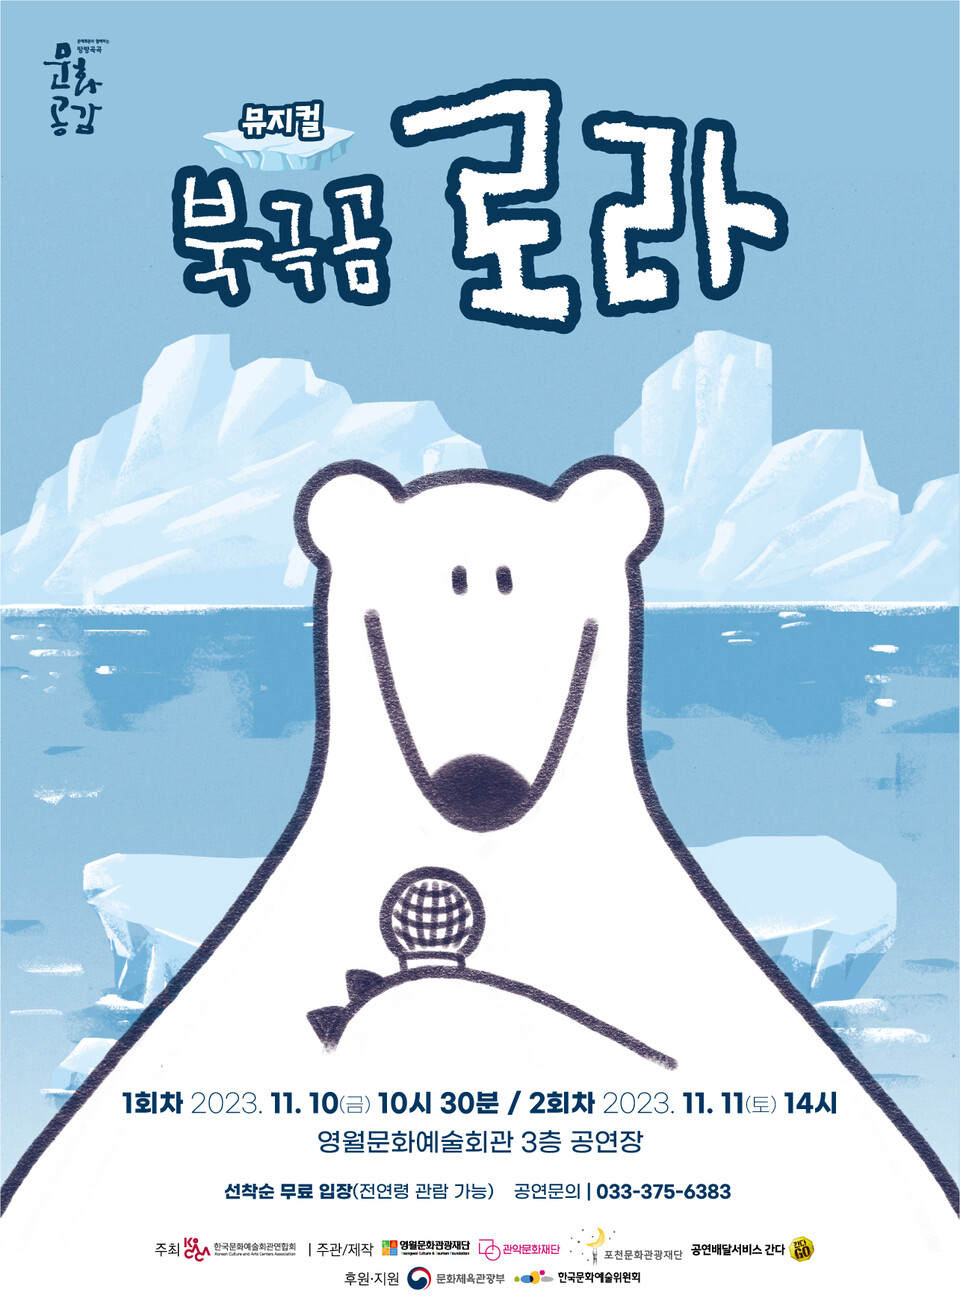 가족뮤지컬 '북극곰 로라'가 10일부터 관객들을 만난다. (사진 영월군청)/뉴스펭귄